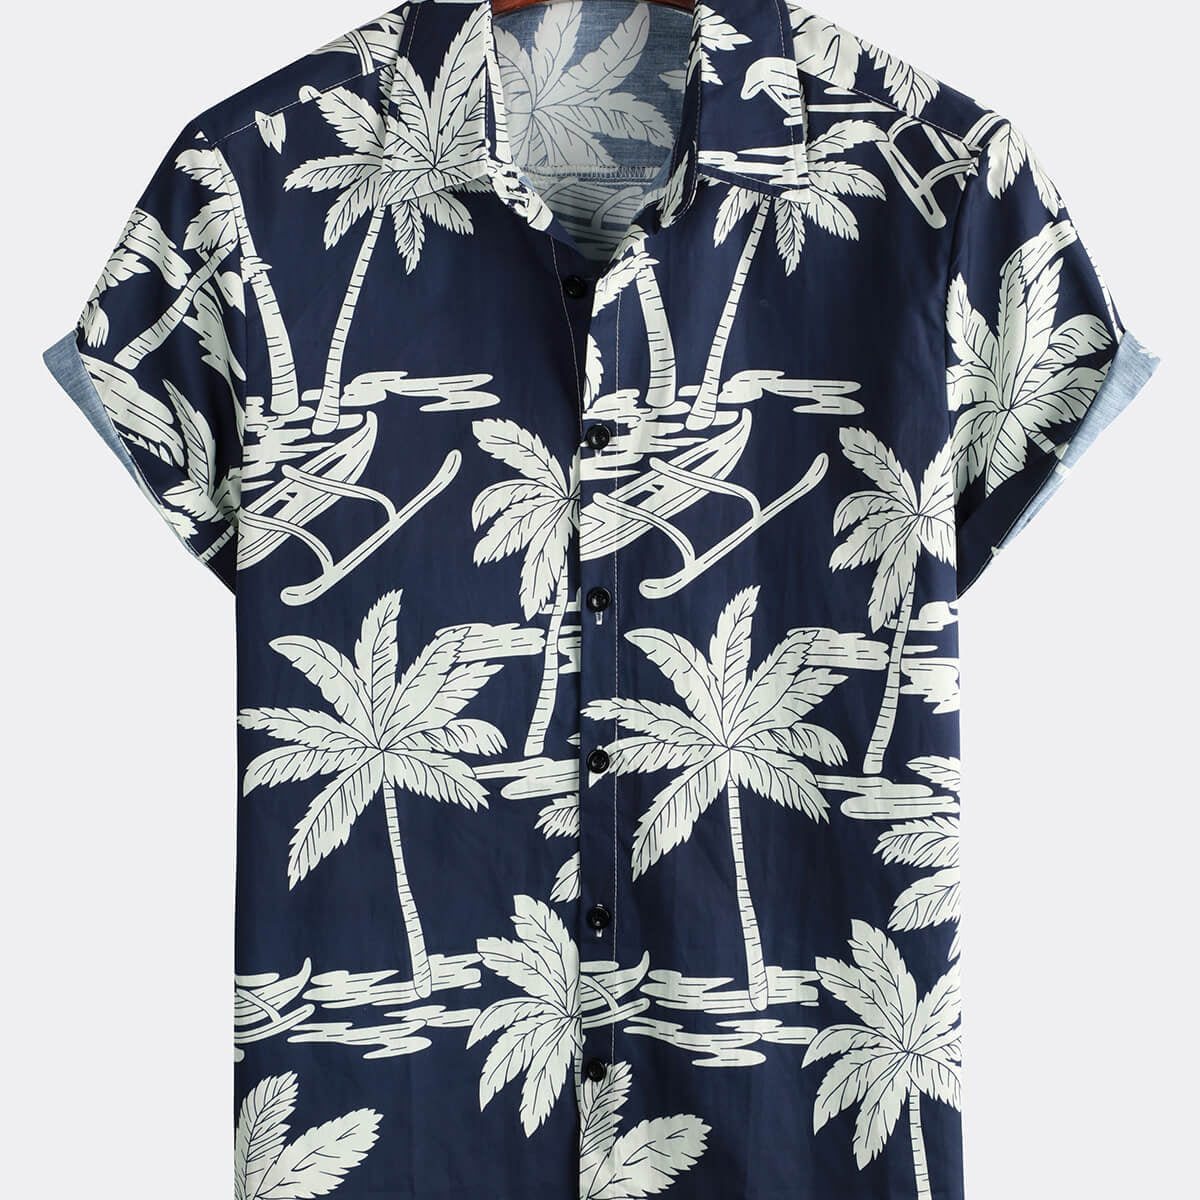 Camisa hawaiana de manga corta para hombre, de algodón, con estampado de palmeras, color azul marino, con botones, para vacaciones